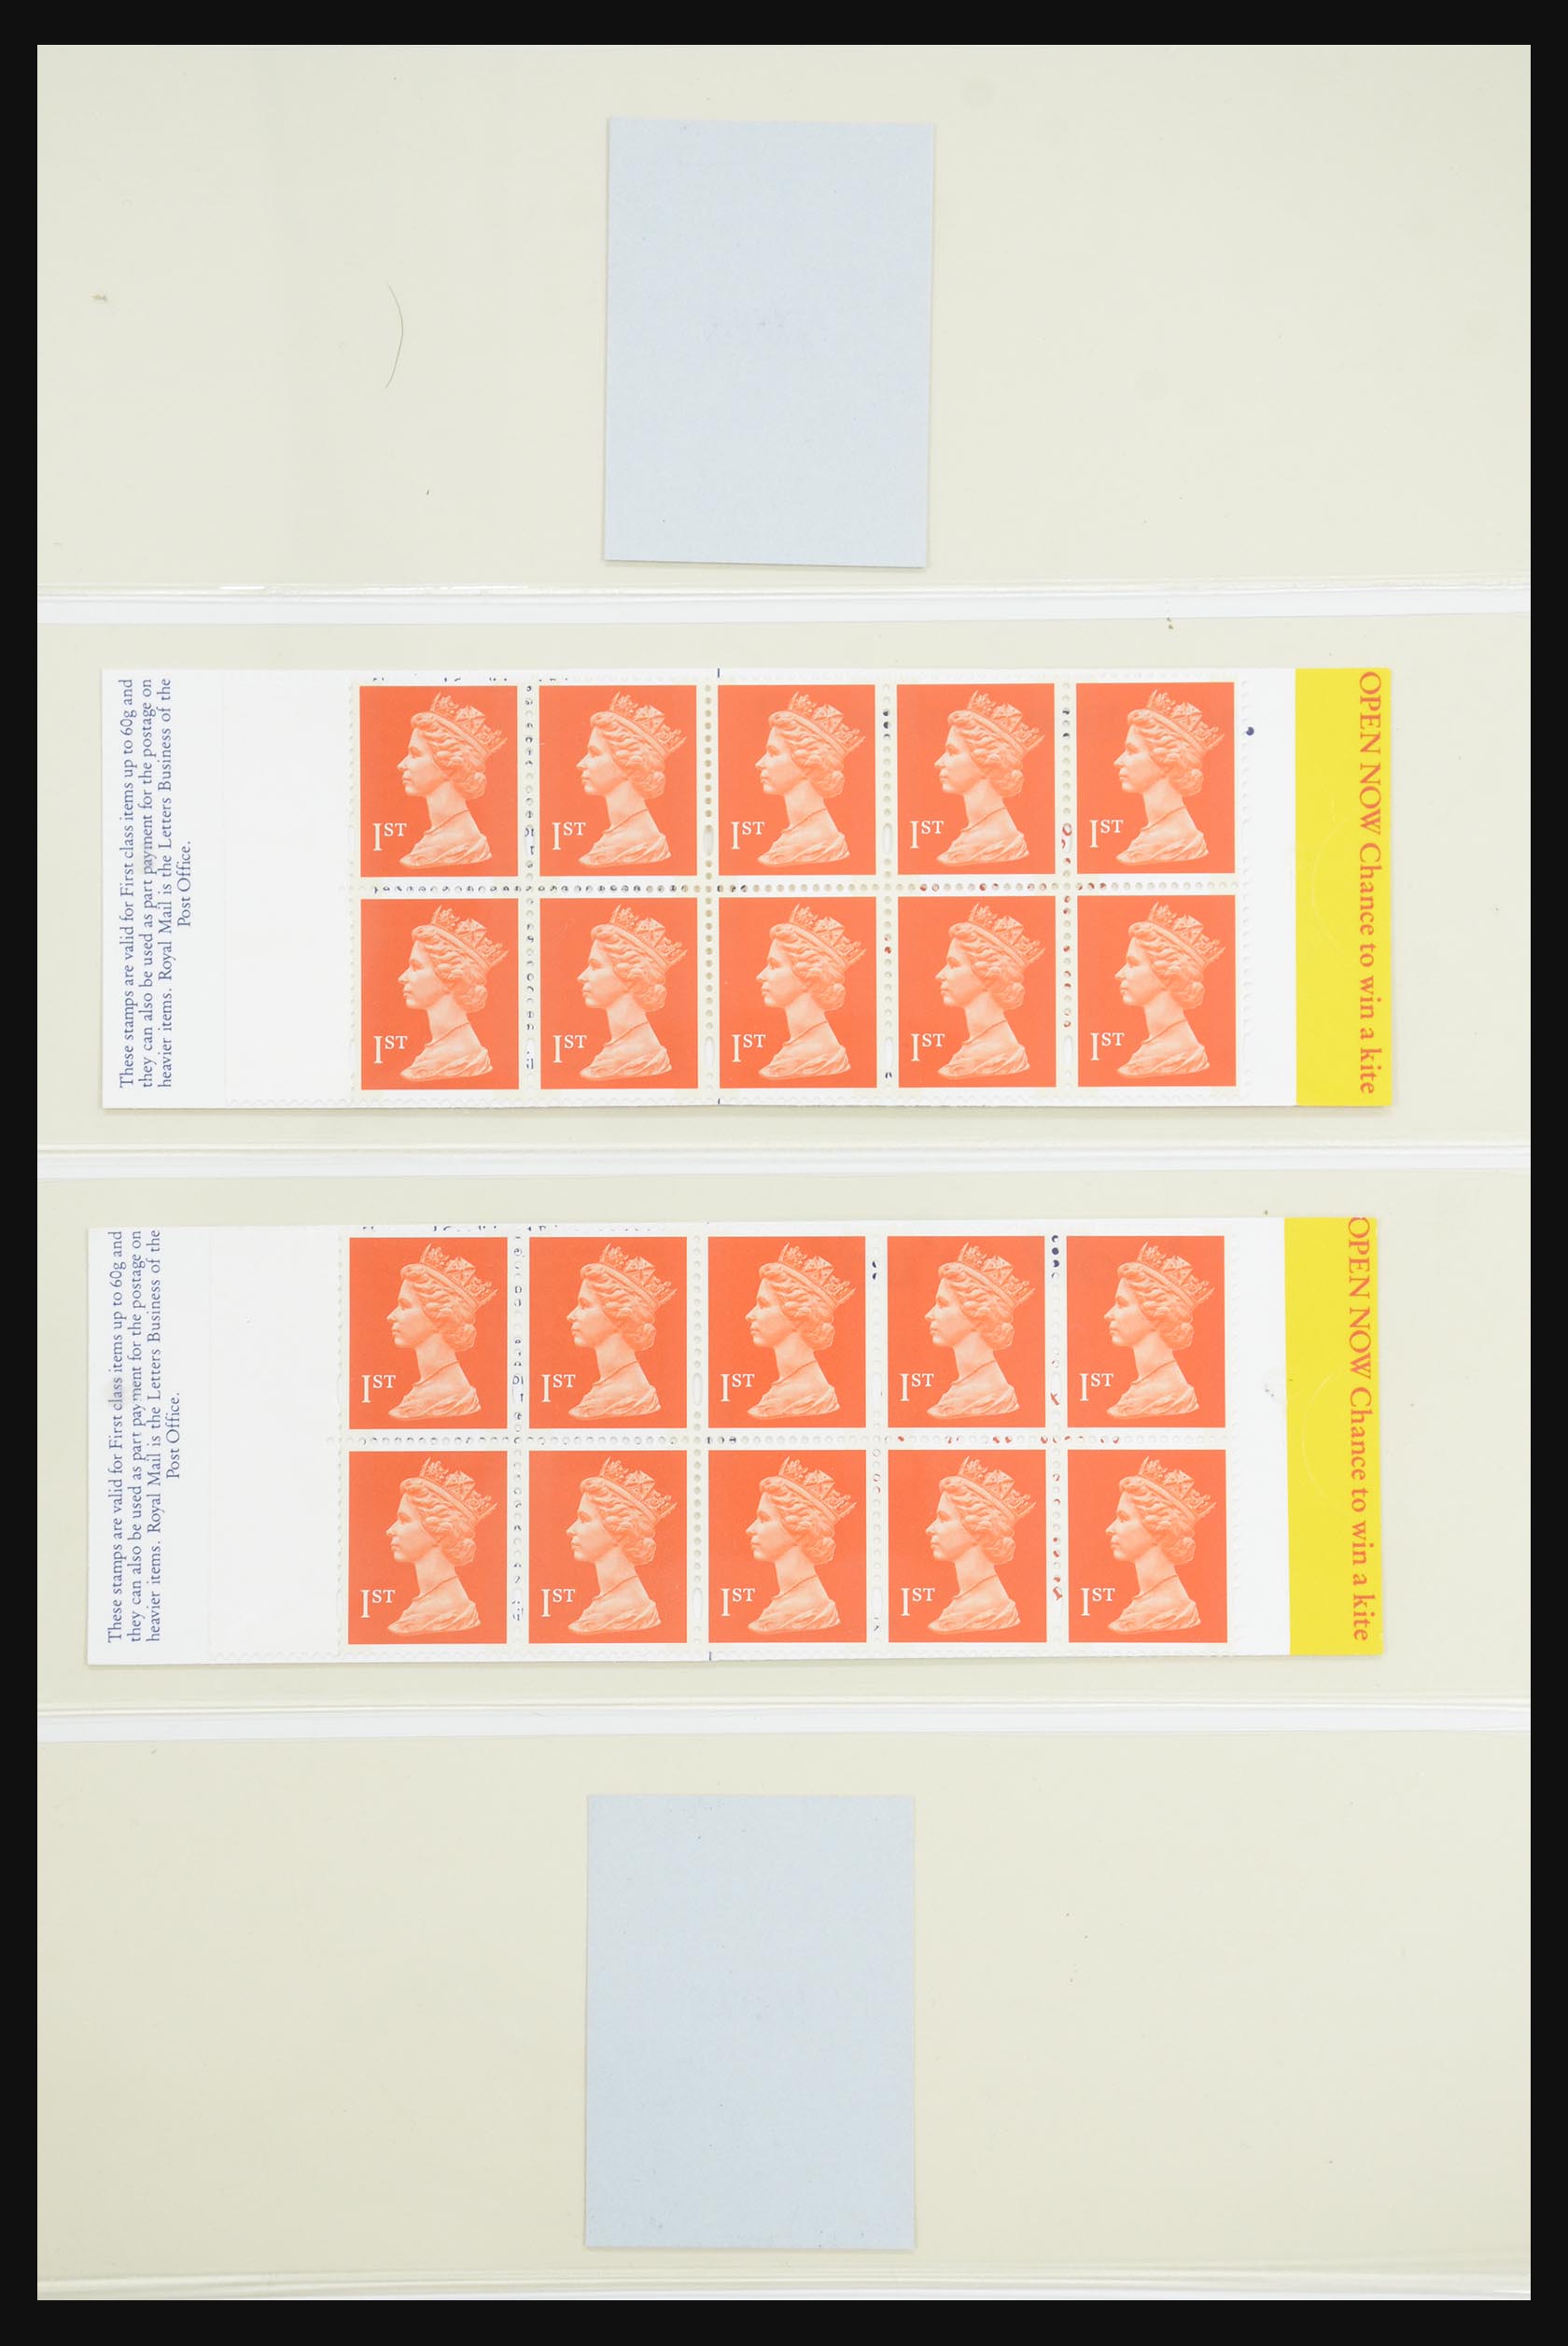 31960 124 - 31960 Engeland postzegelboekjes 1989-2000.